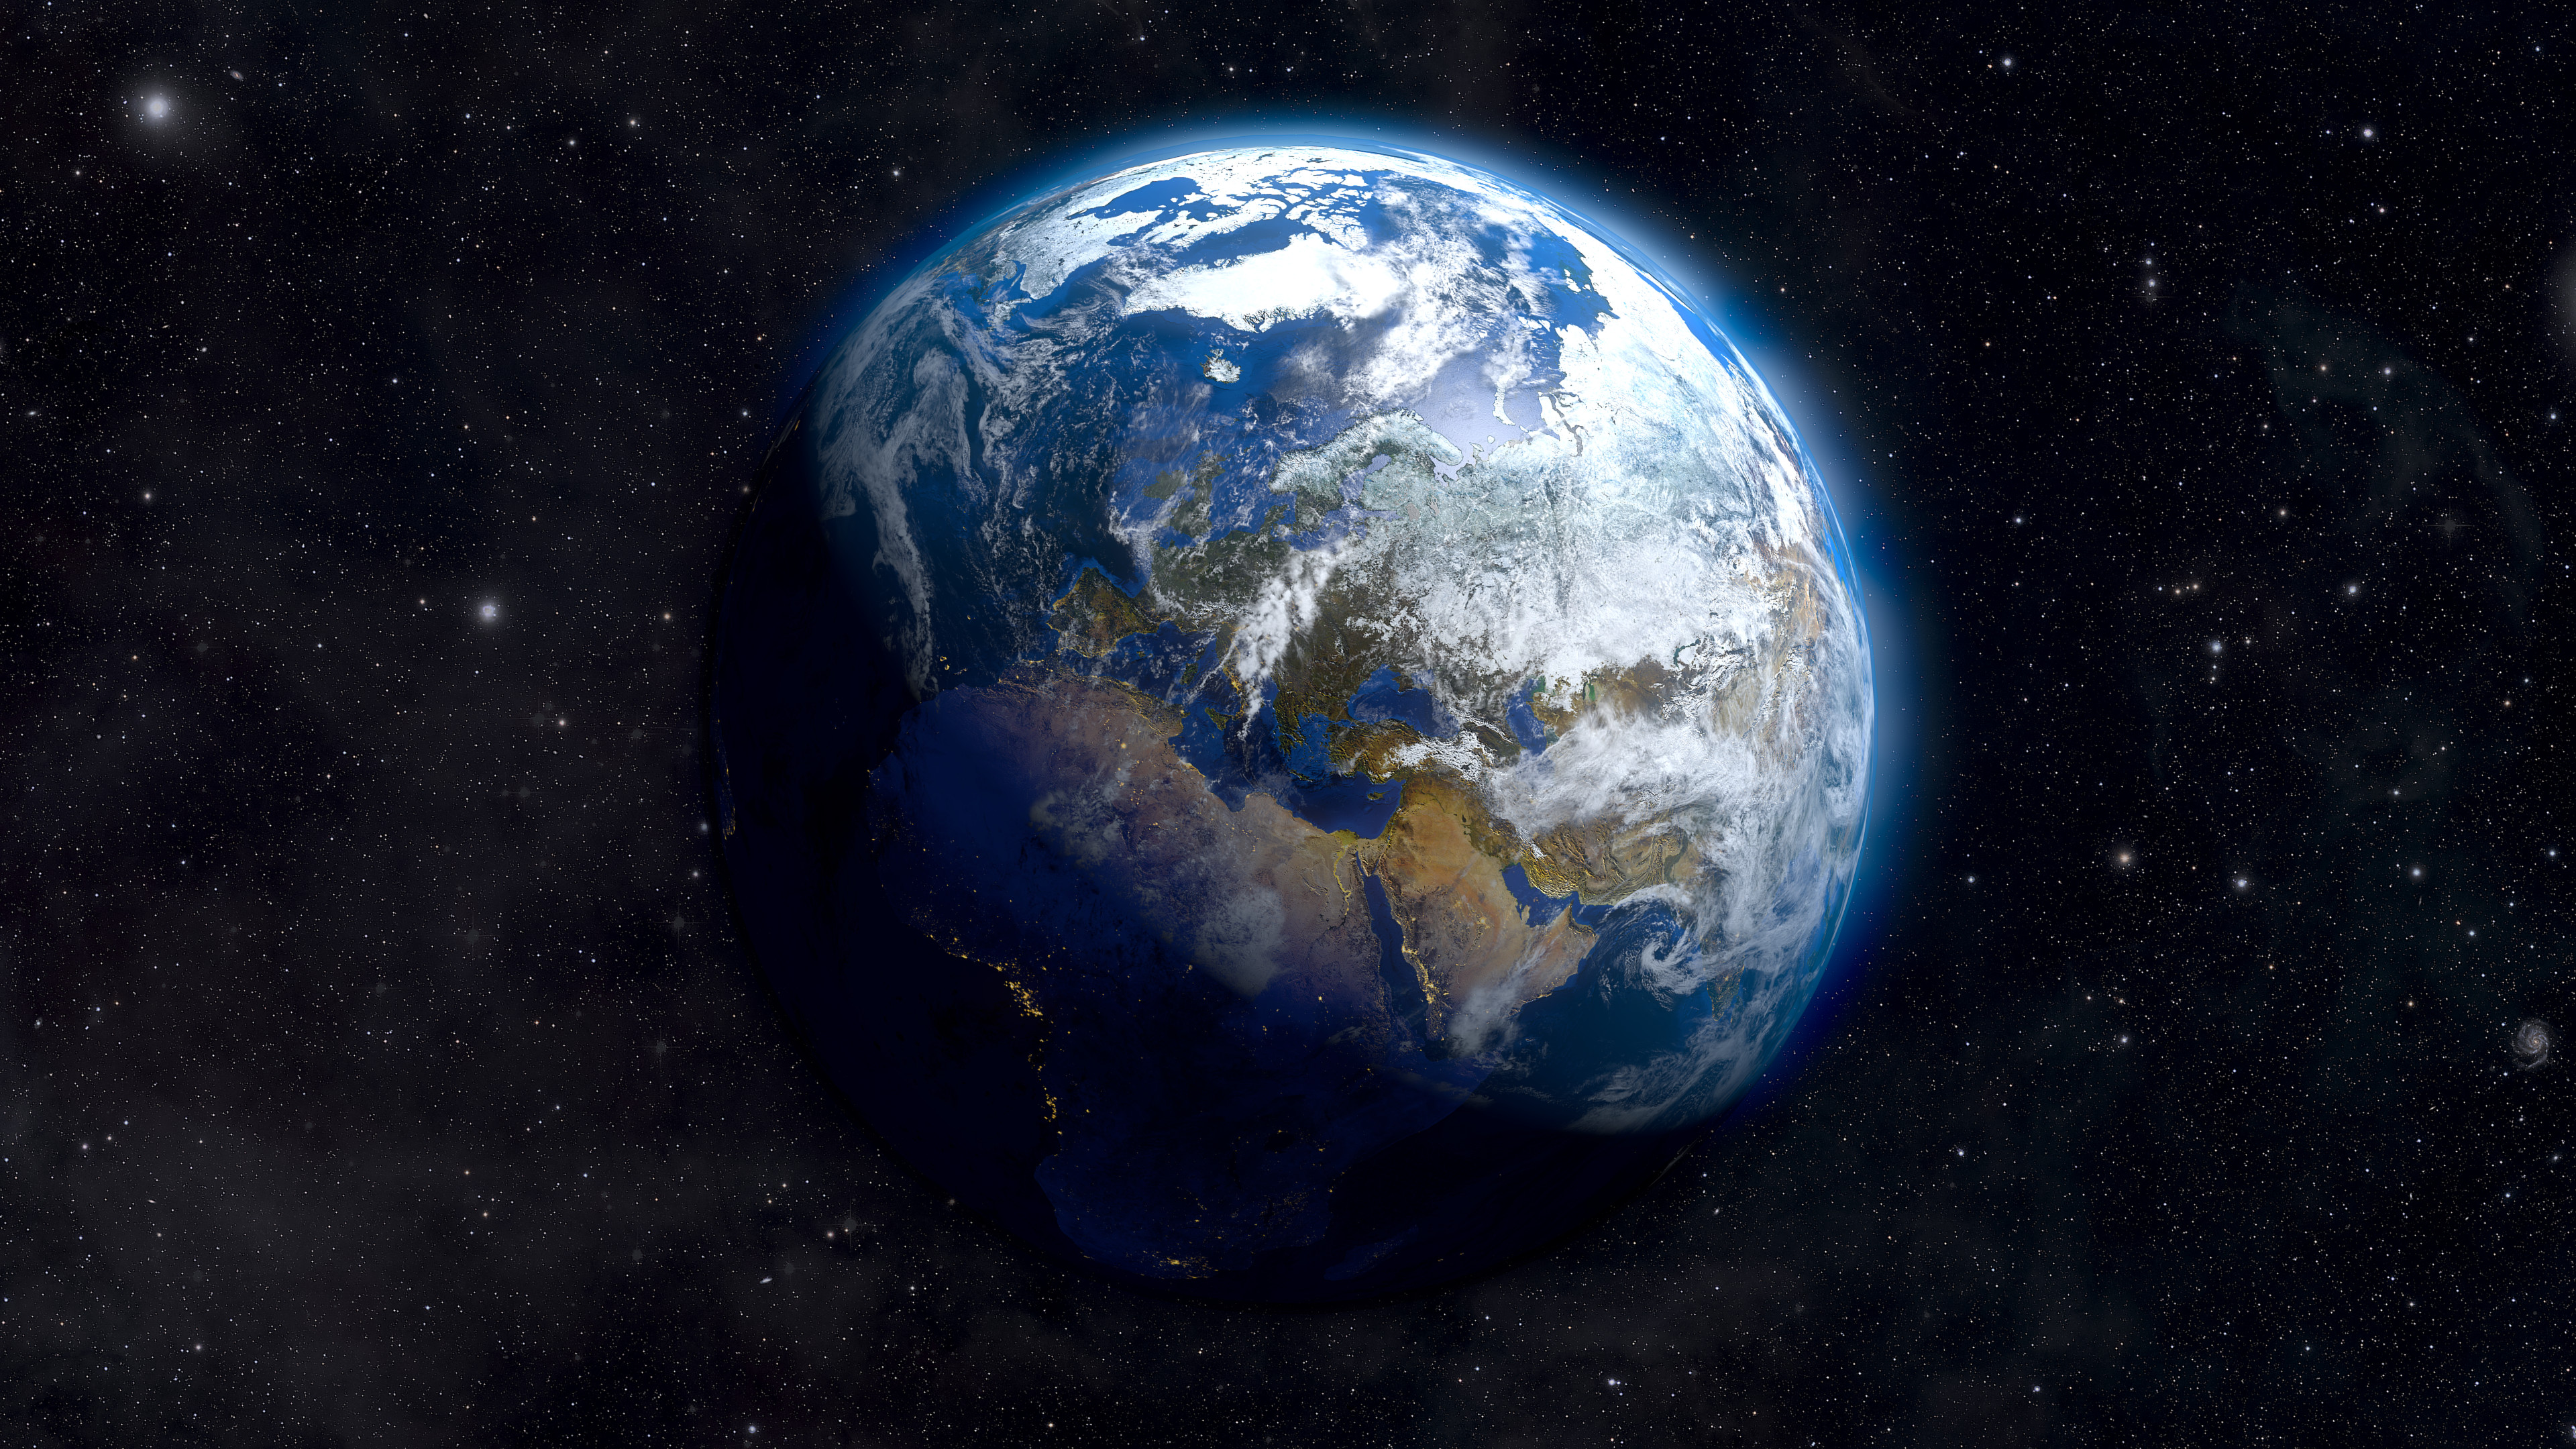 Earth From Space 4K Ultra HD Desktop Wallpaper Uploaded by 3840x2160